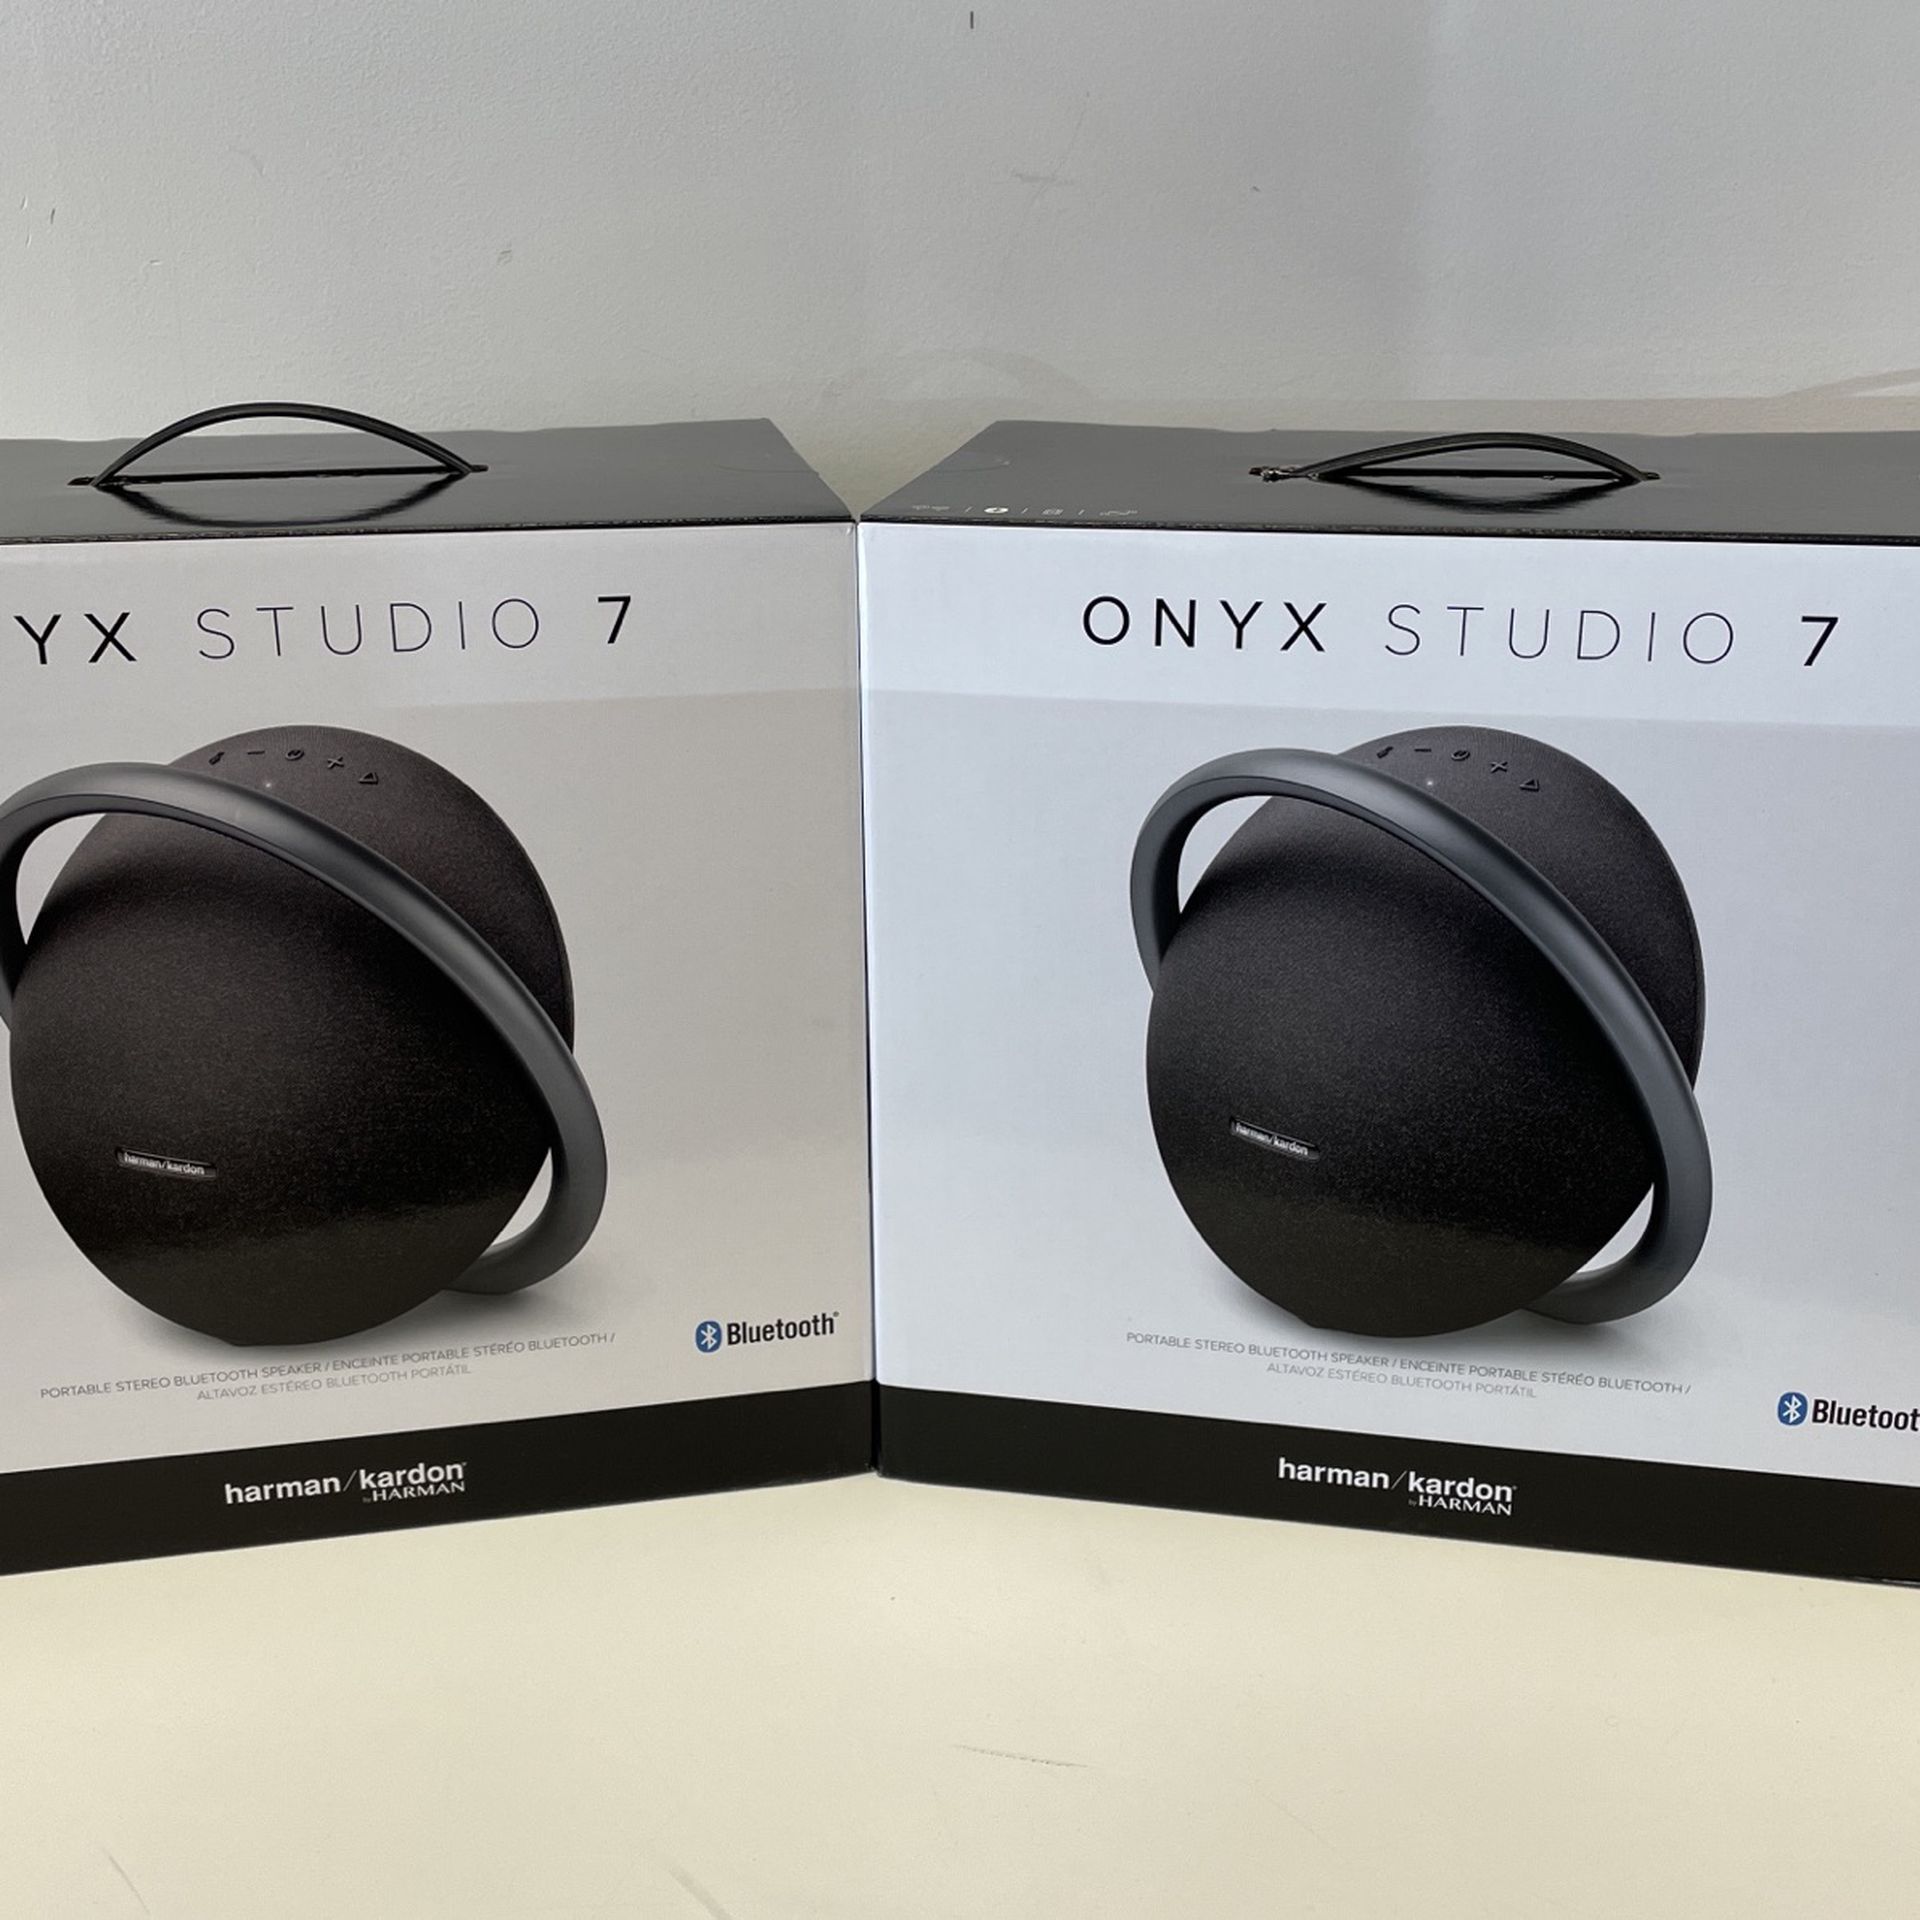 Onyx Studio 7